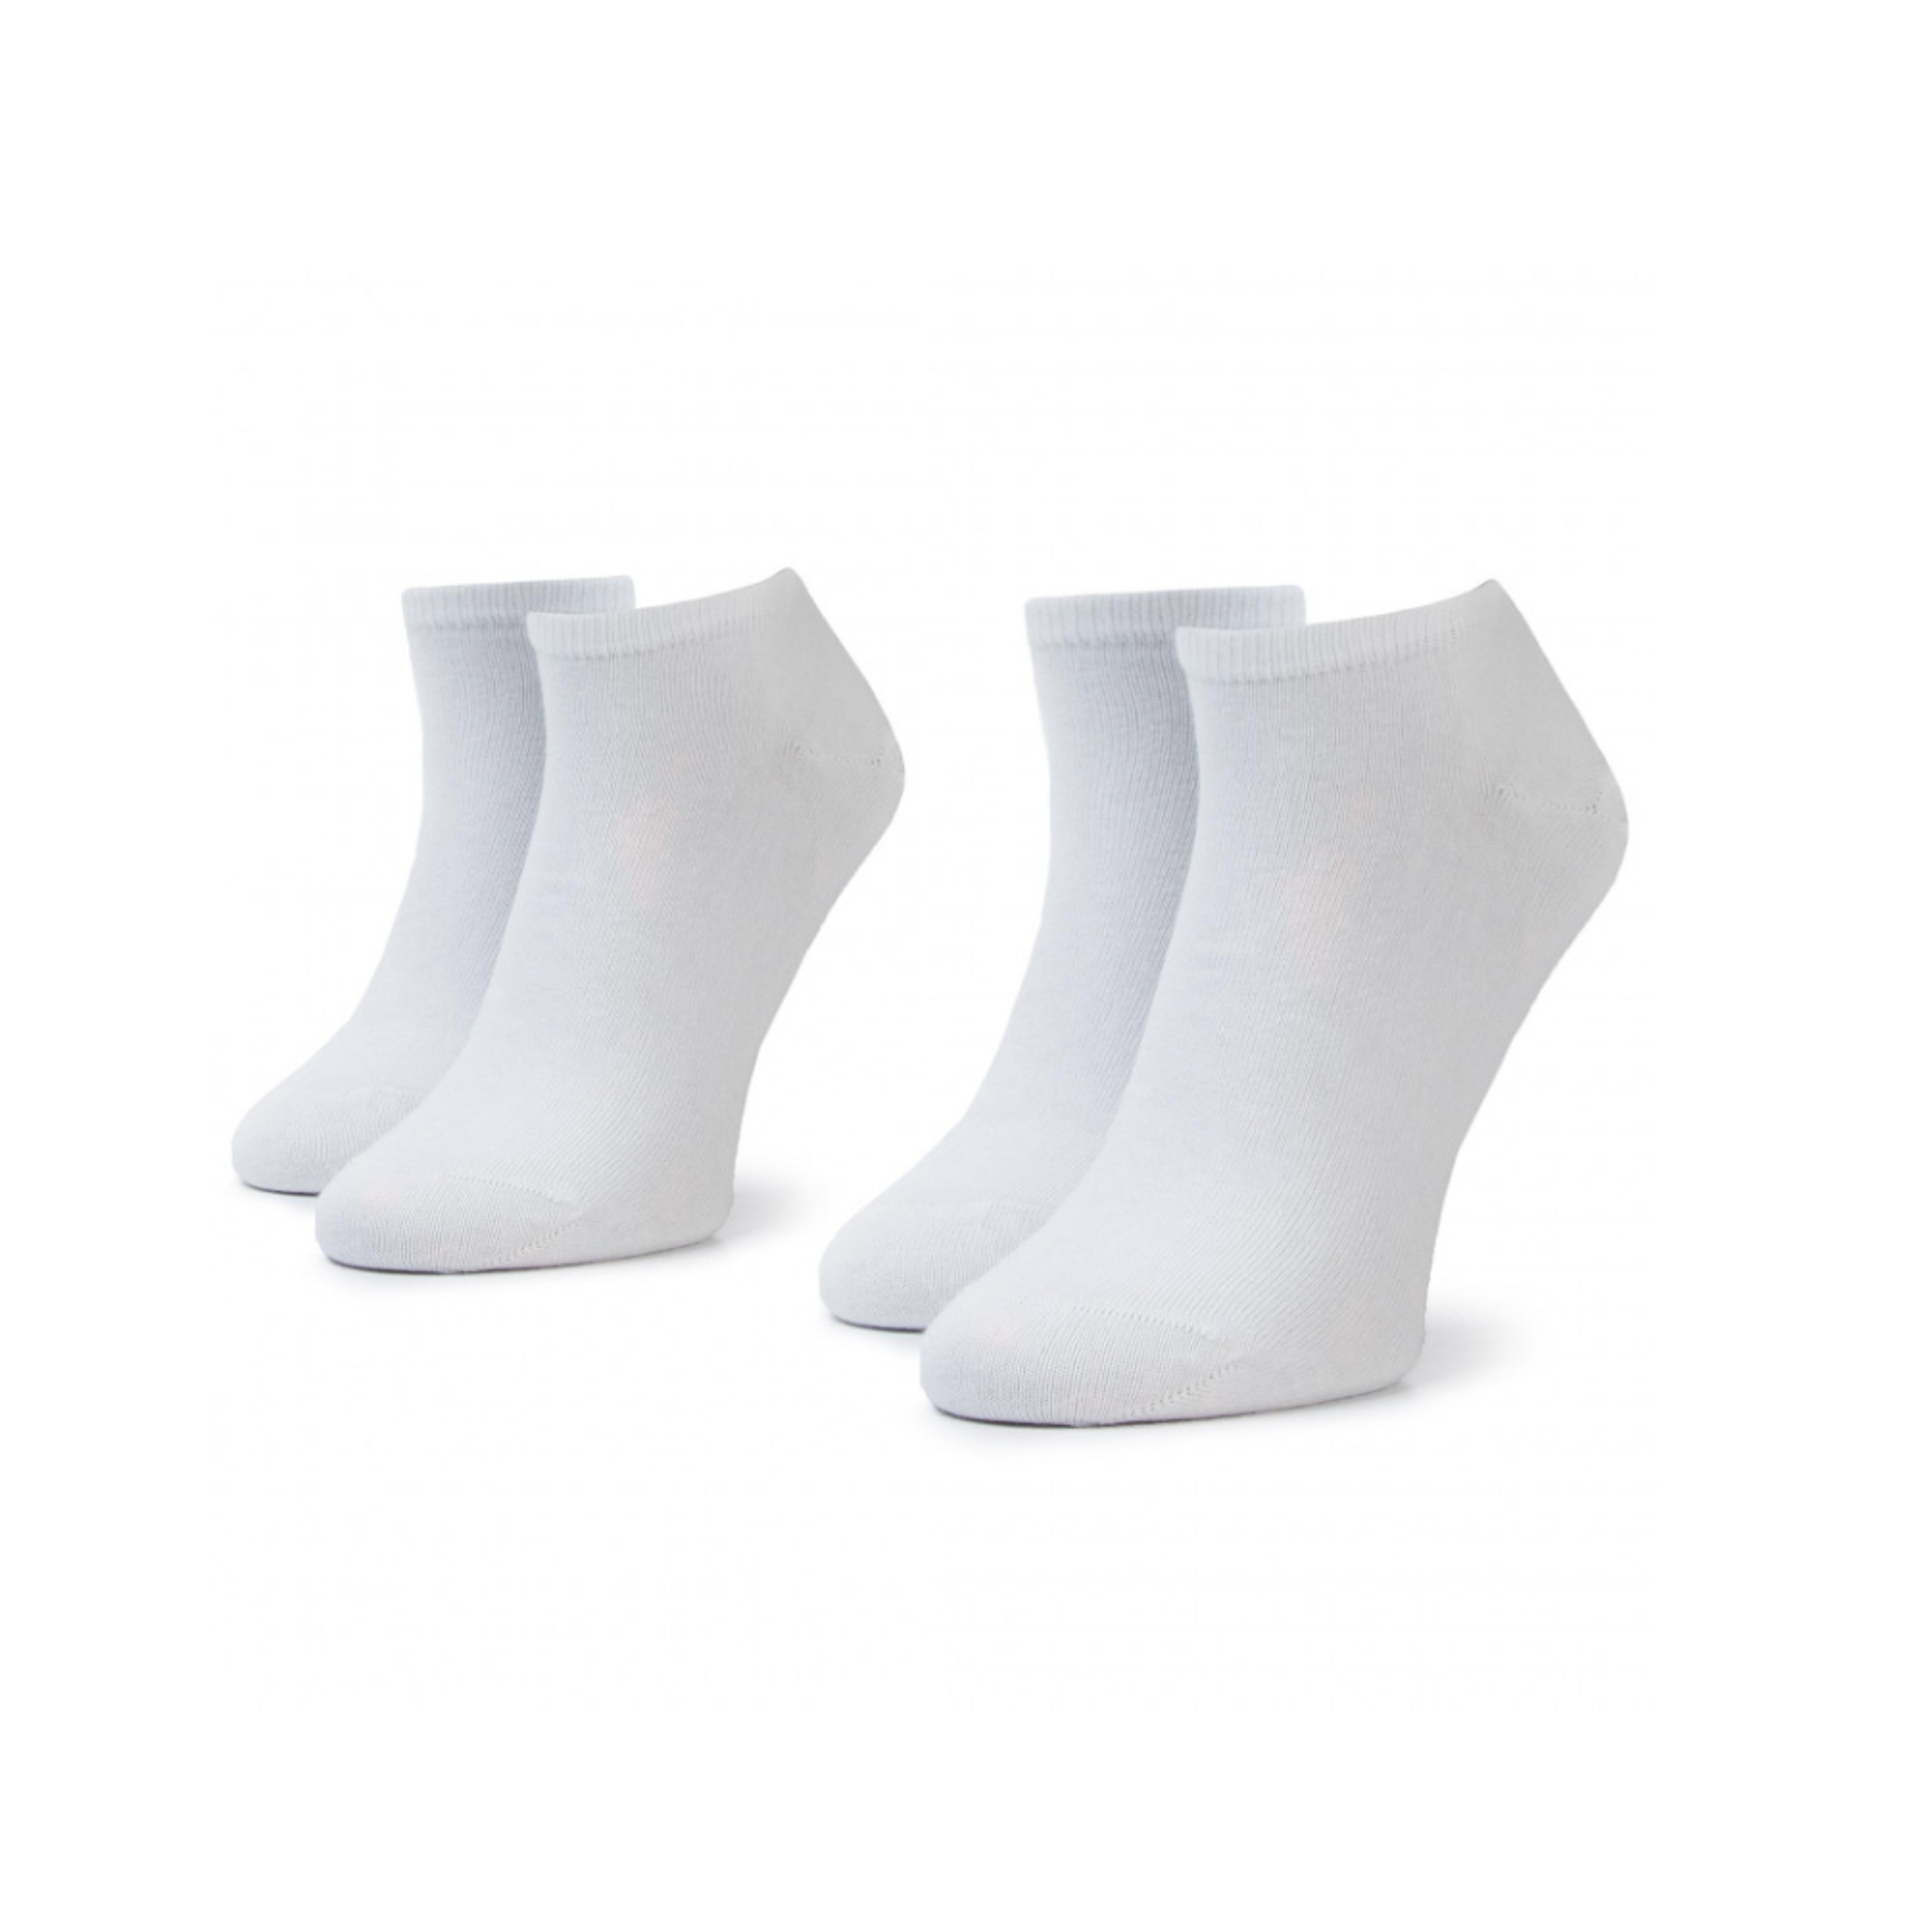 Tommy Hilfiger pánske biele ponožky 2pack - 43 (300)